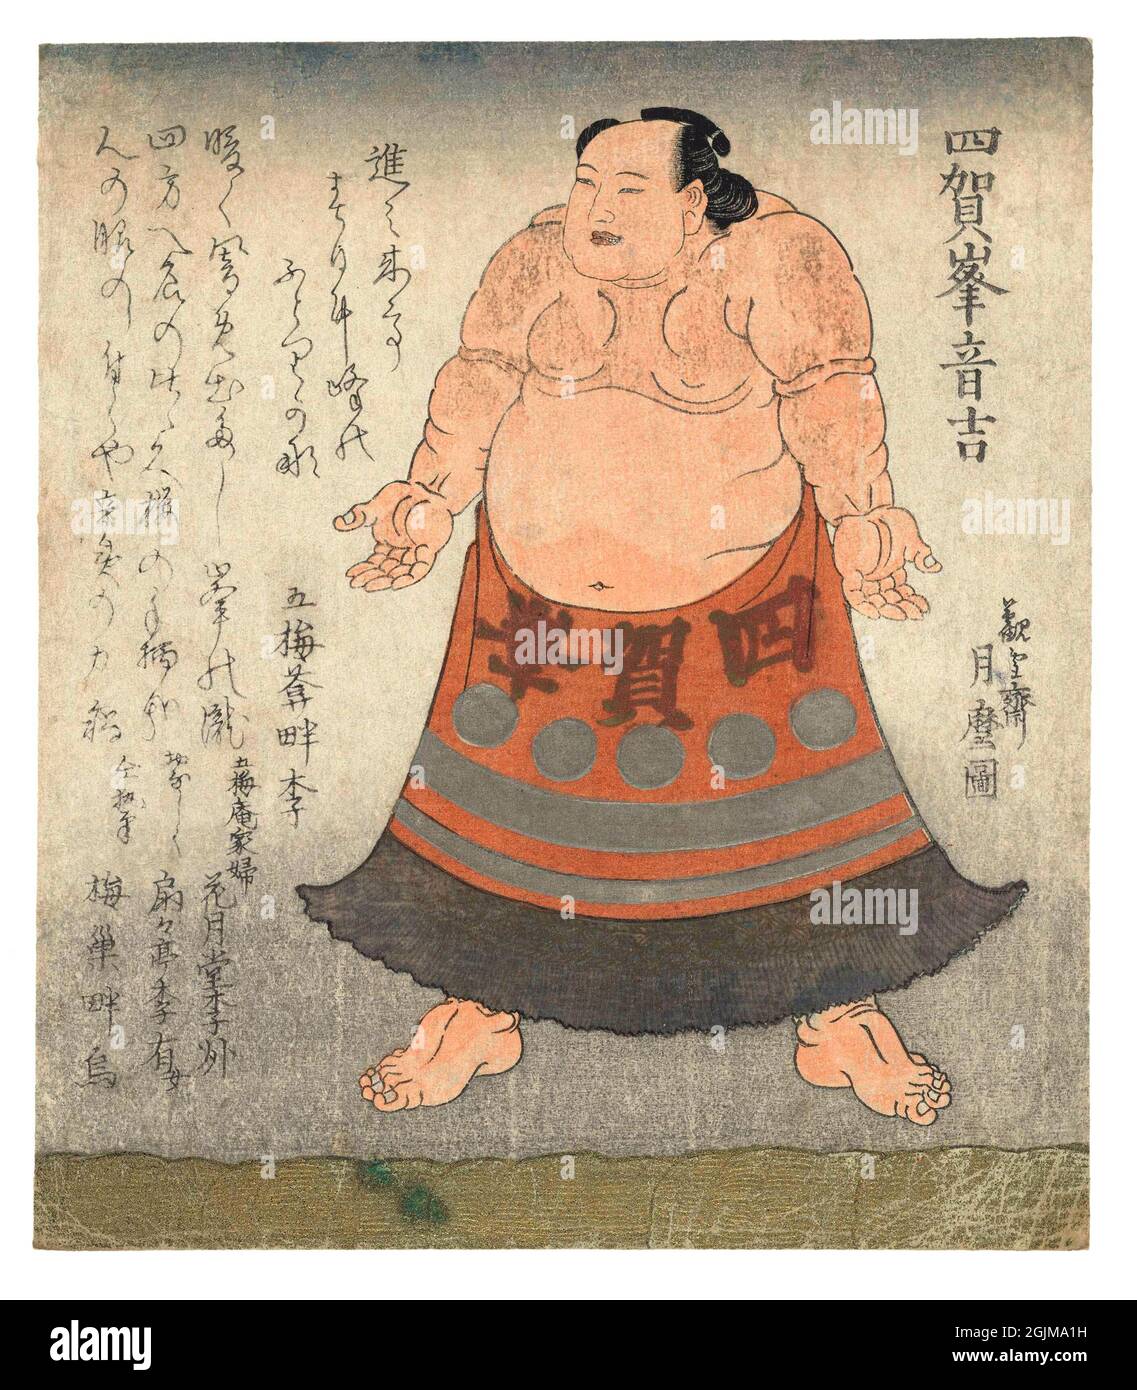 Le lutteur de Sumo Shiganomine Otokichi, avec son nom en haut à droite et sur ses vêtements, est prêt pour la cérémonie de pré-combat. Avec quatre poèmes, un de Gobaian Azemono, deux de ses femmes au foyer et un de son serviteur. Version optimisée et améliorée d'une illustration japonaise de coupe de bois du XIXe siècle. Banque D'Images